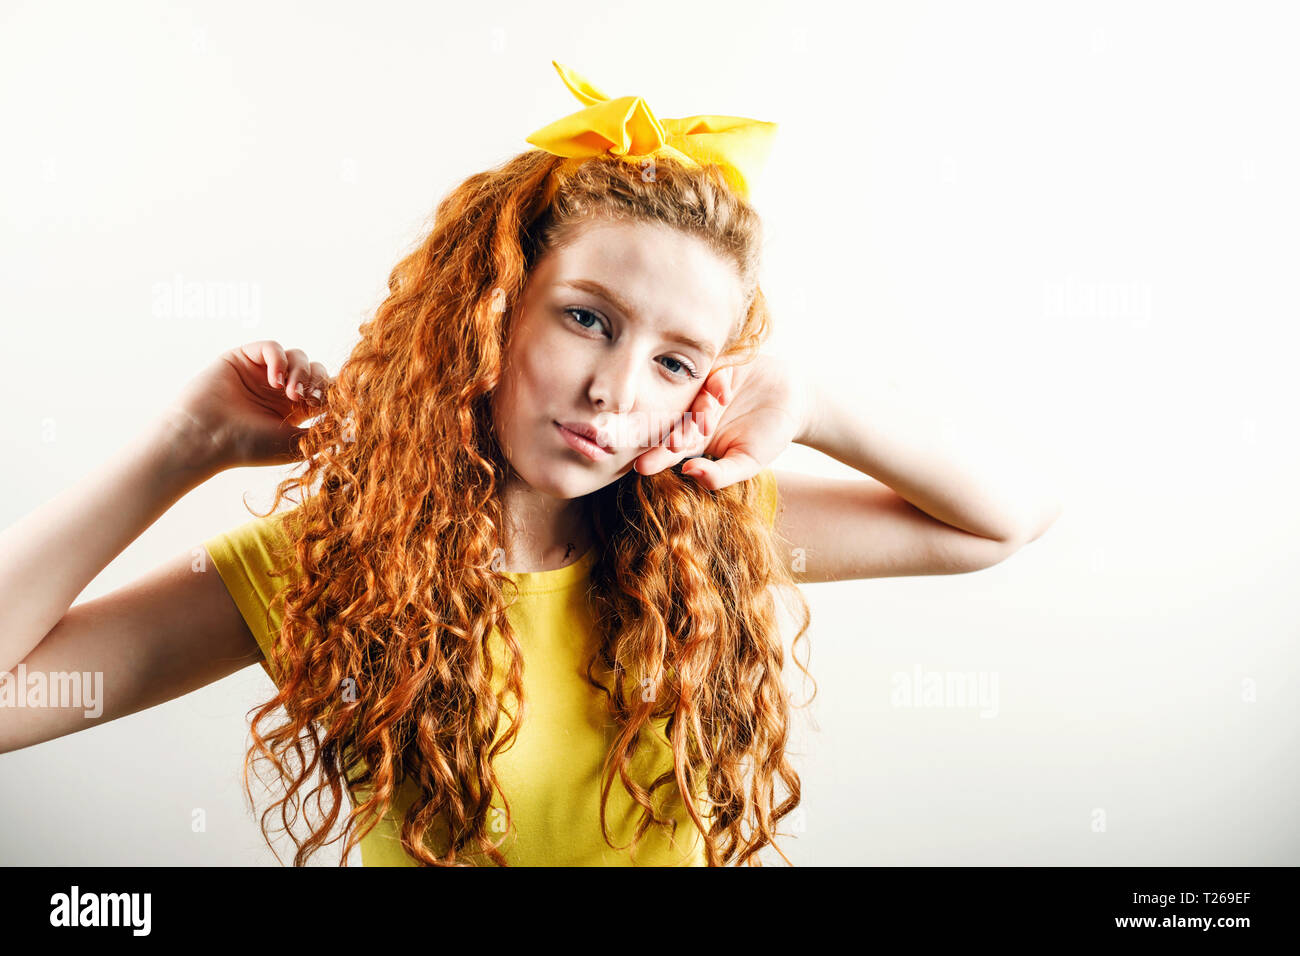 Portrait de jeune fille rousse bouclée avec un arc jaune sur sa tête portant des T-shirt jaune posant sur le fond blanc Banque D'Images